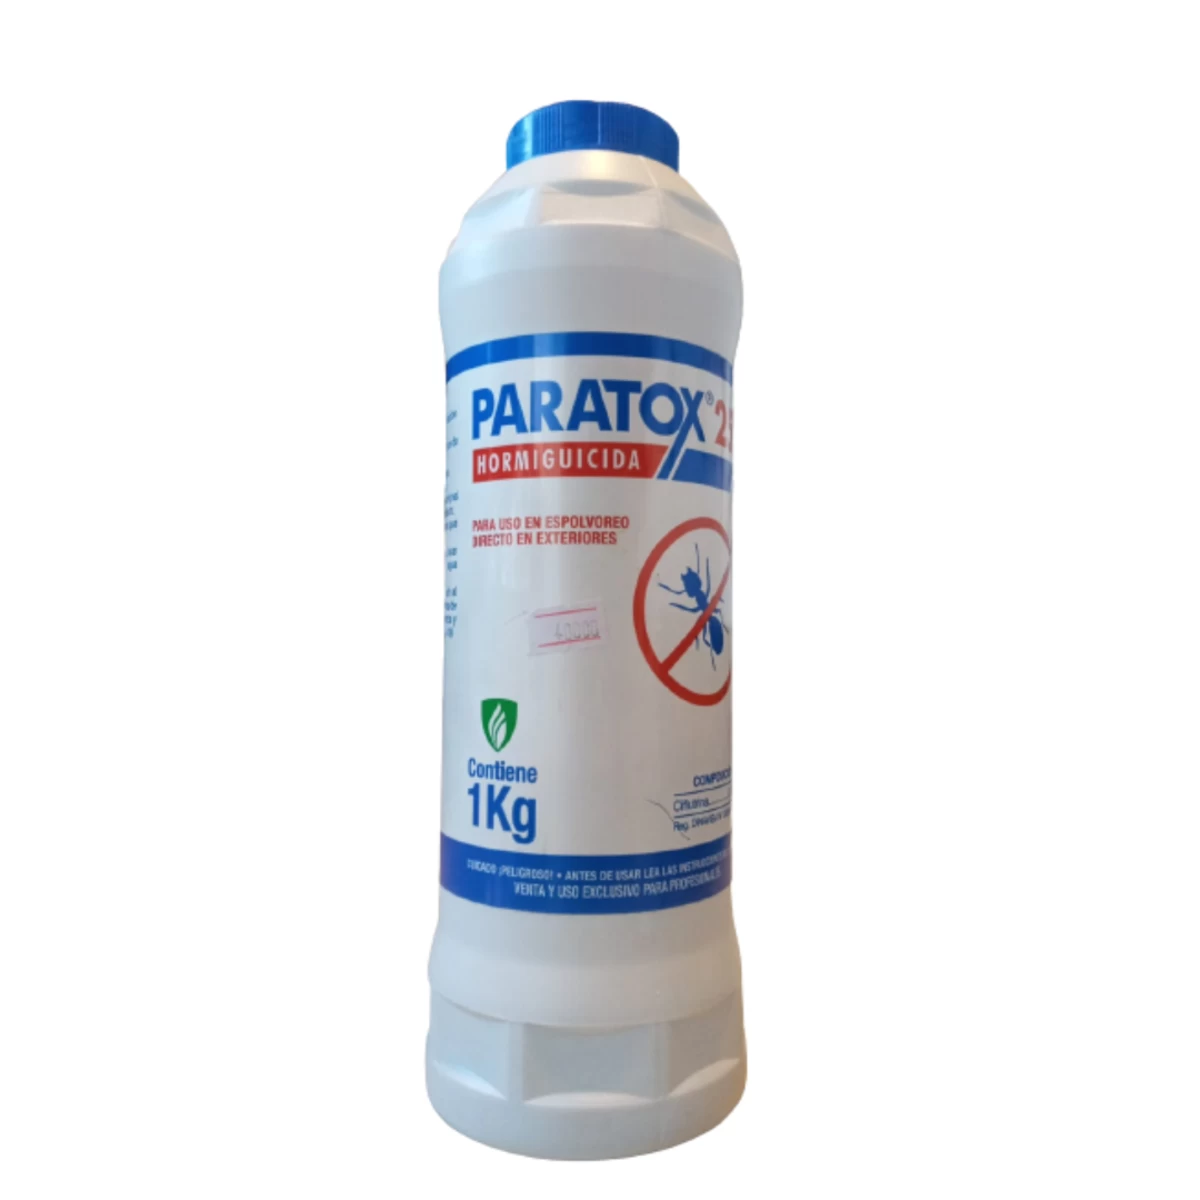 paratox-hormiguicida-1kg